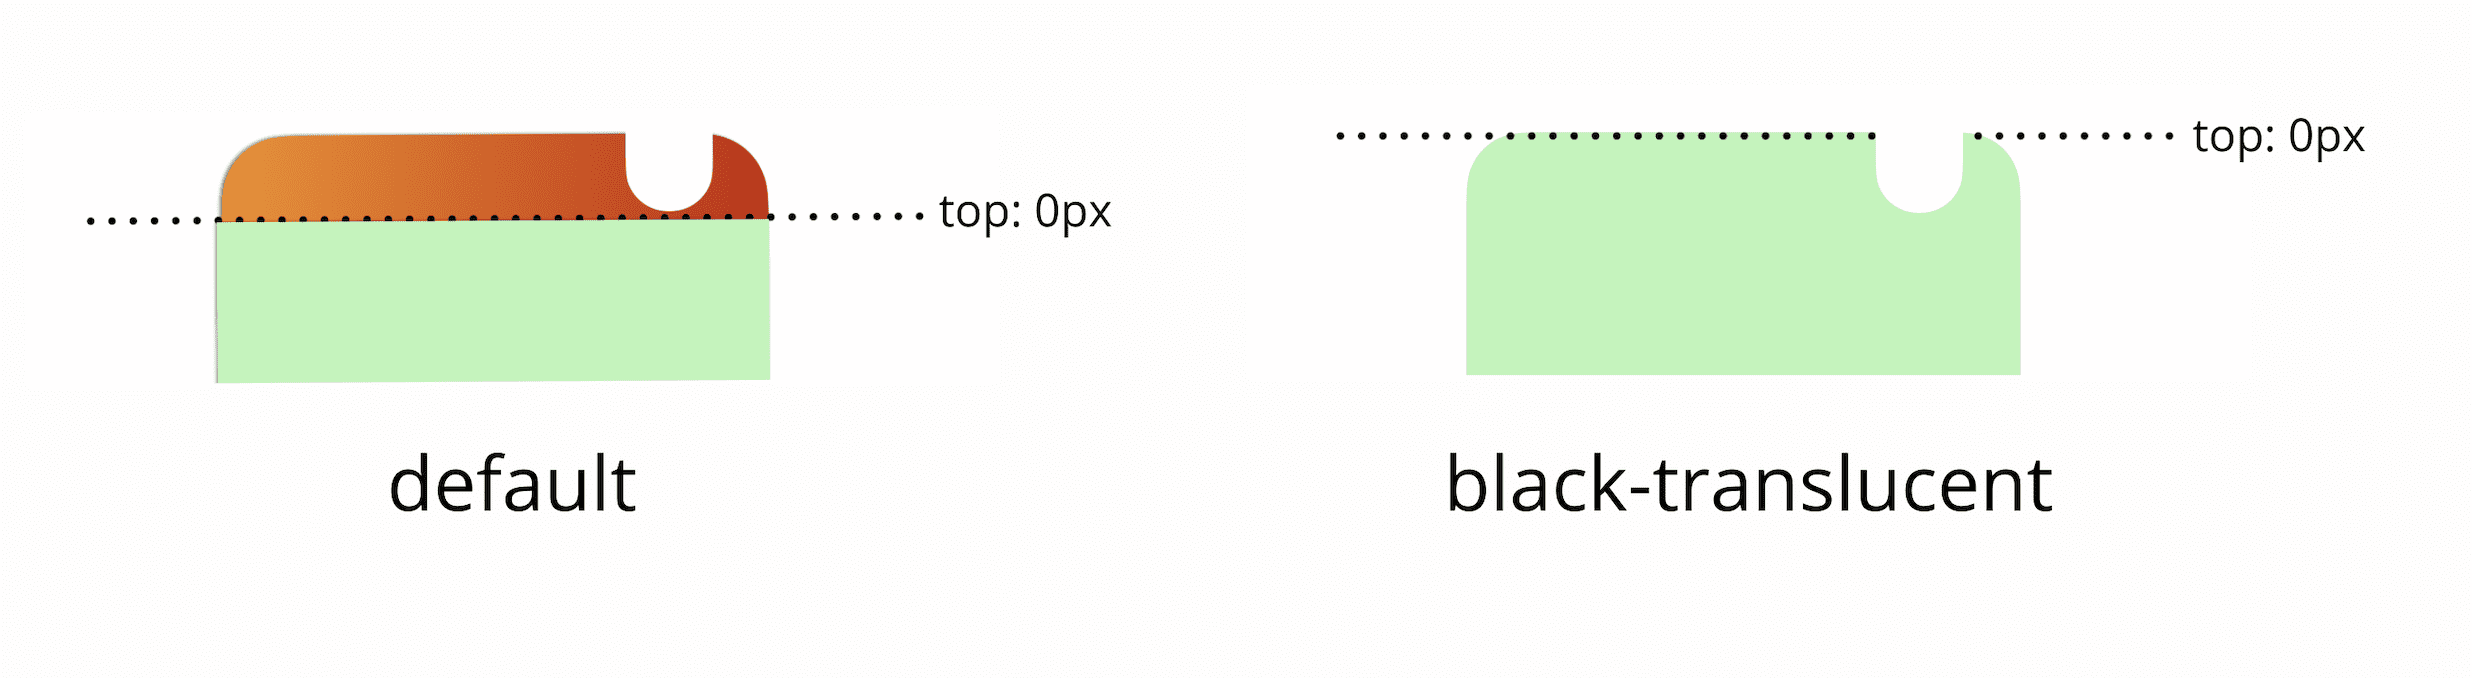 Górne 0 pikseli widocznego obszaru domyślnie znajduje się poniżej paska stanu. Po dodaniu czarnego półprzezroczystego metatagu górne 0 pikseli widocznego obszaru będzie się zgadzać z fizyczną górną górą ekranu.